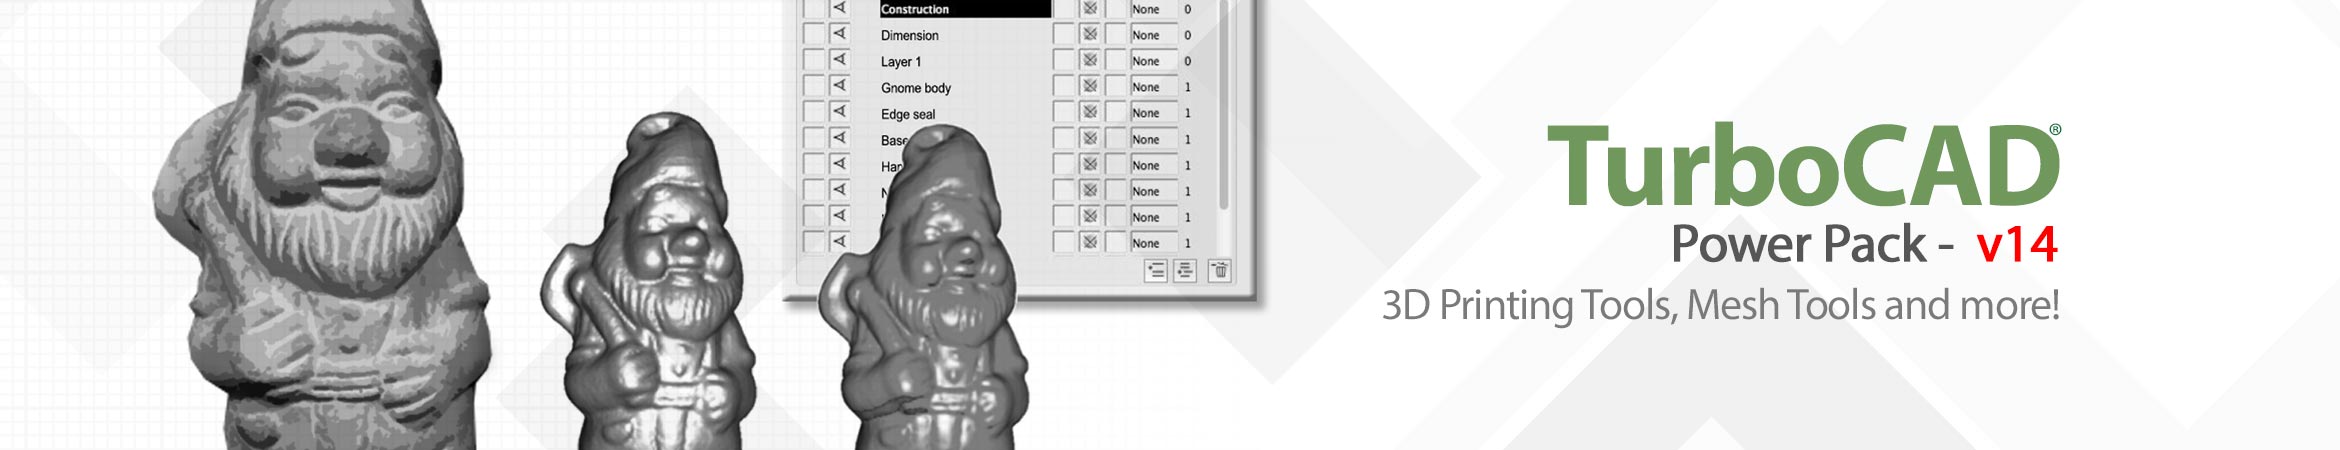 TurboCAD Mac Designer 2D - All-Purpose 2D CAD Software for Mac